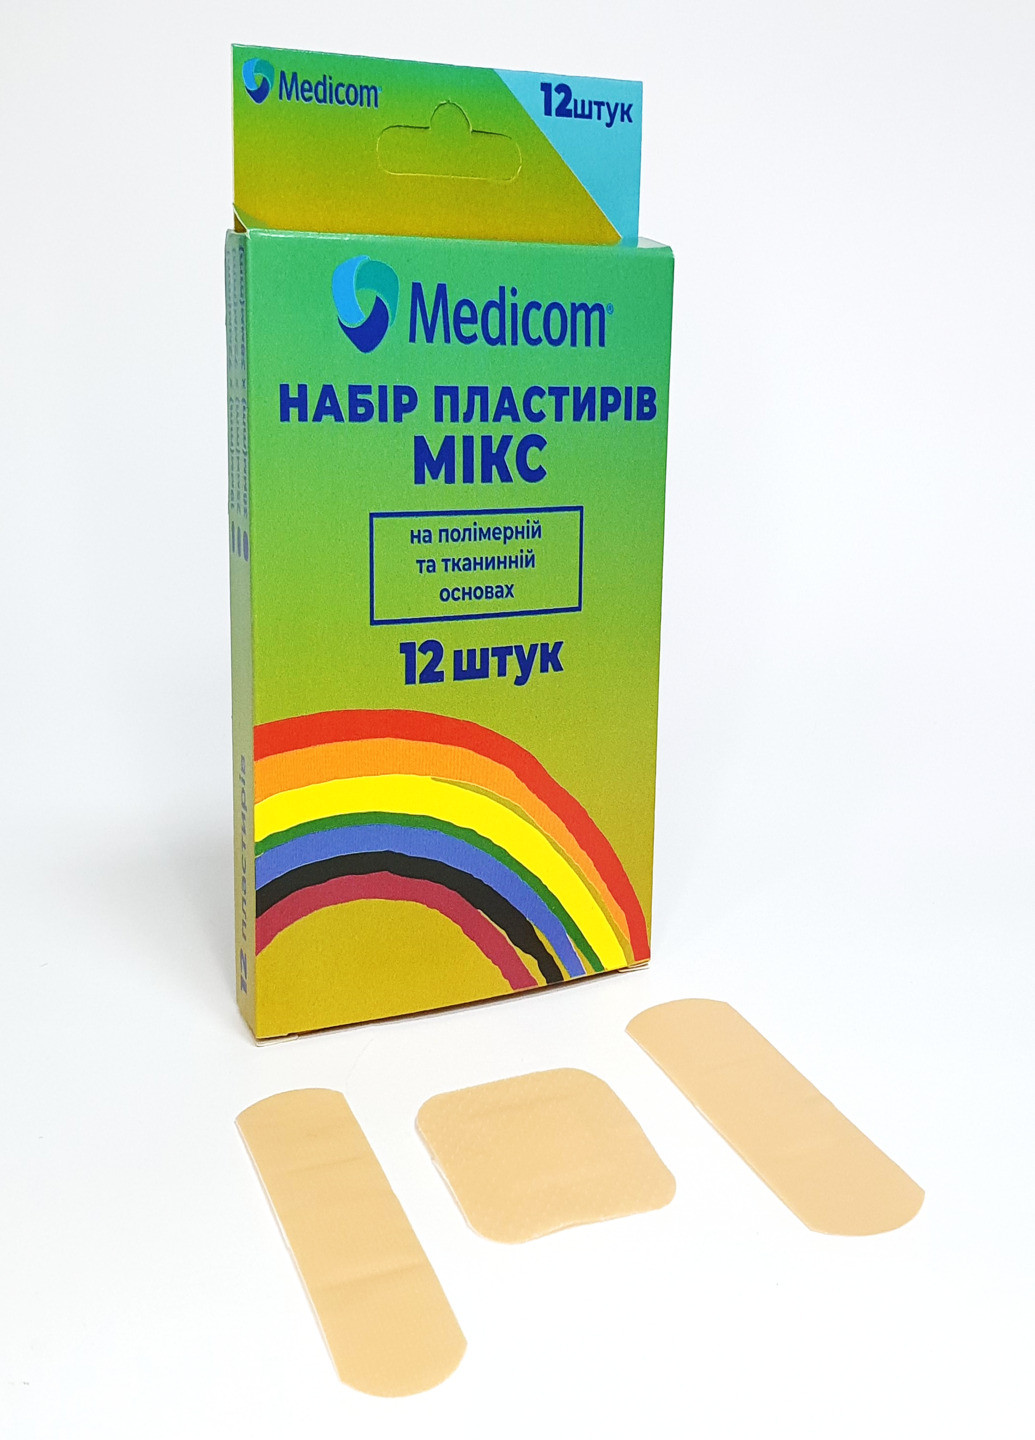 Набір медичних пластирів ® Mікс, 12 шт на полімерній та тканинній основі 5 пач. Medicom (254211645)